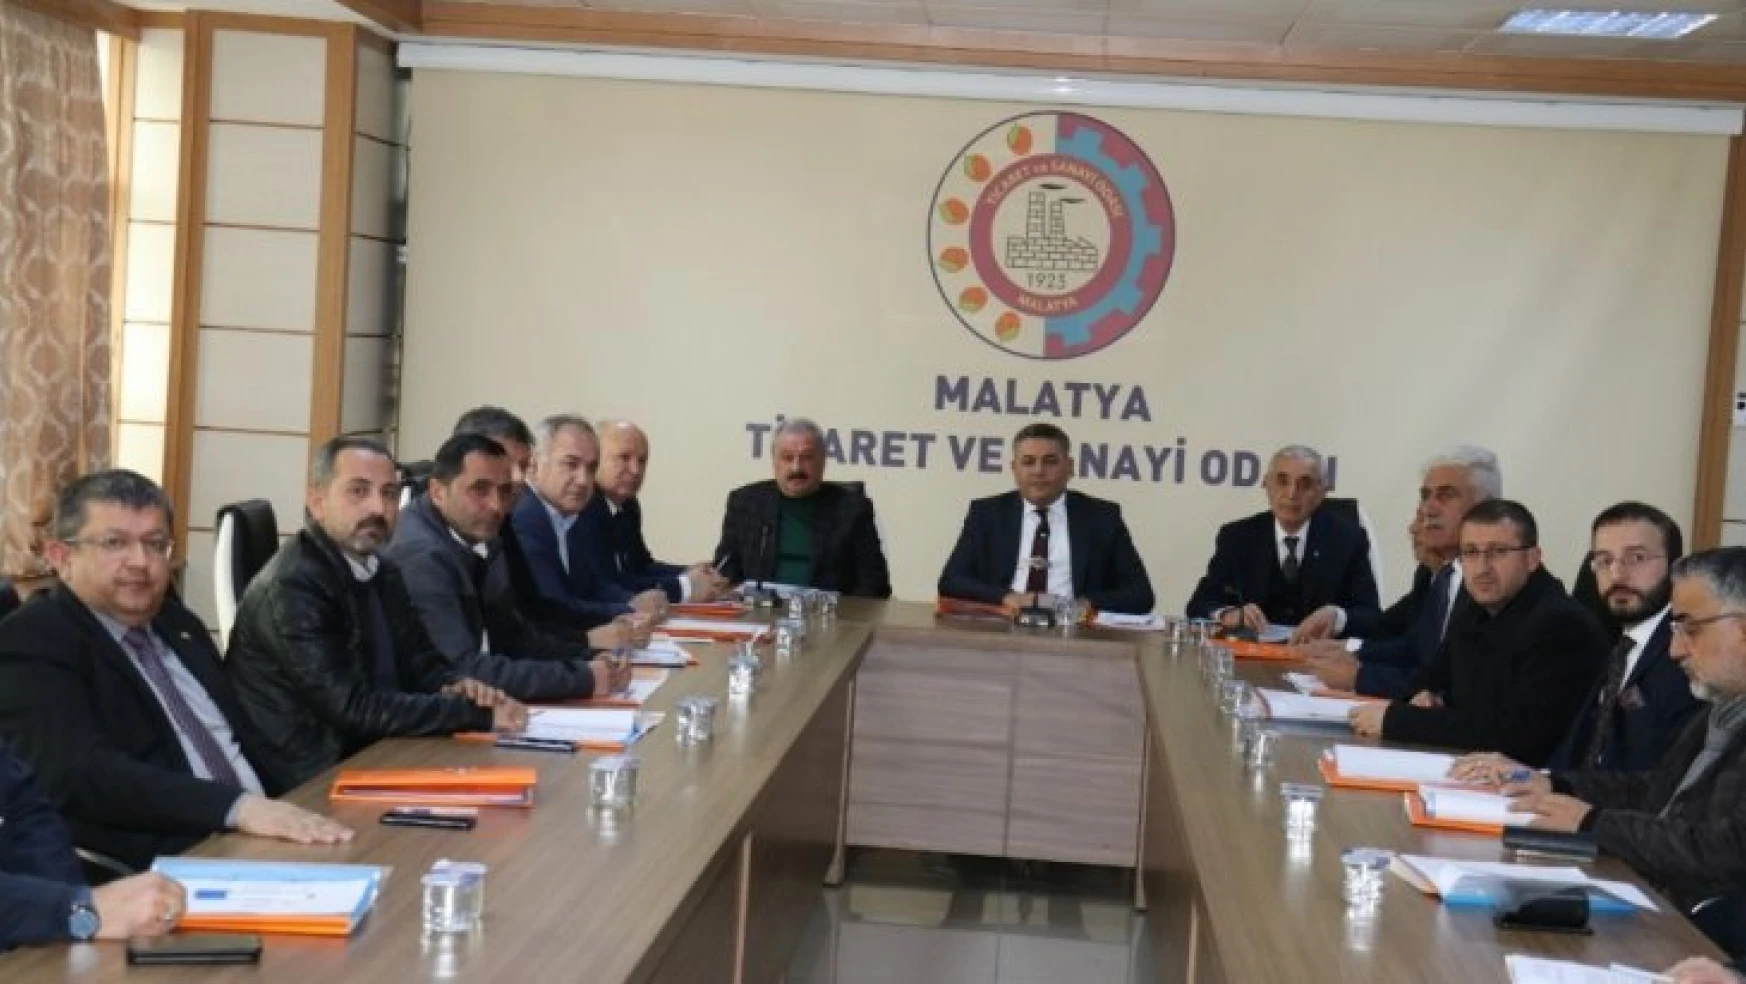 Malatya'da STK'lar ortak açıklama yaptı